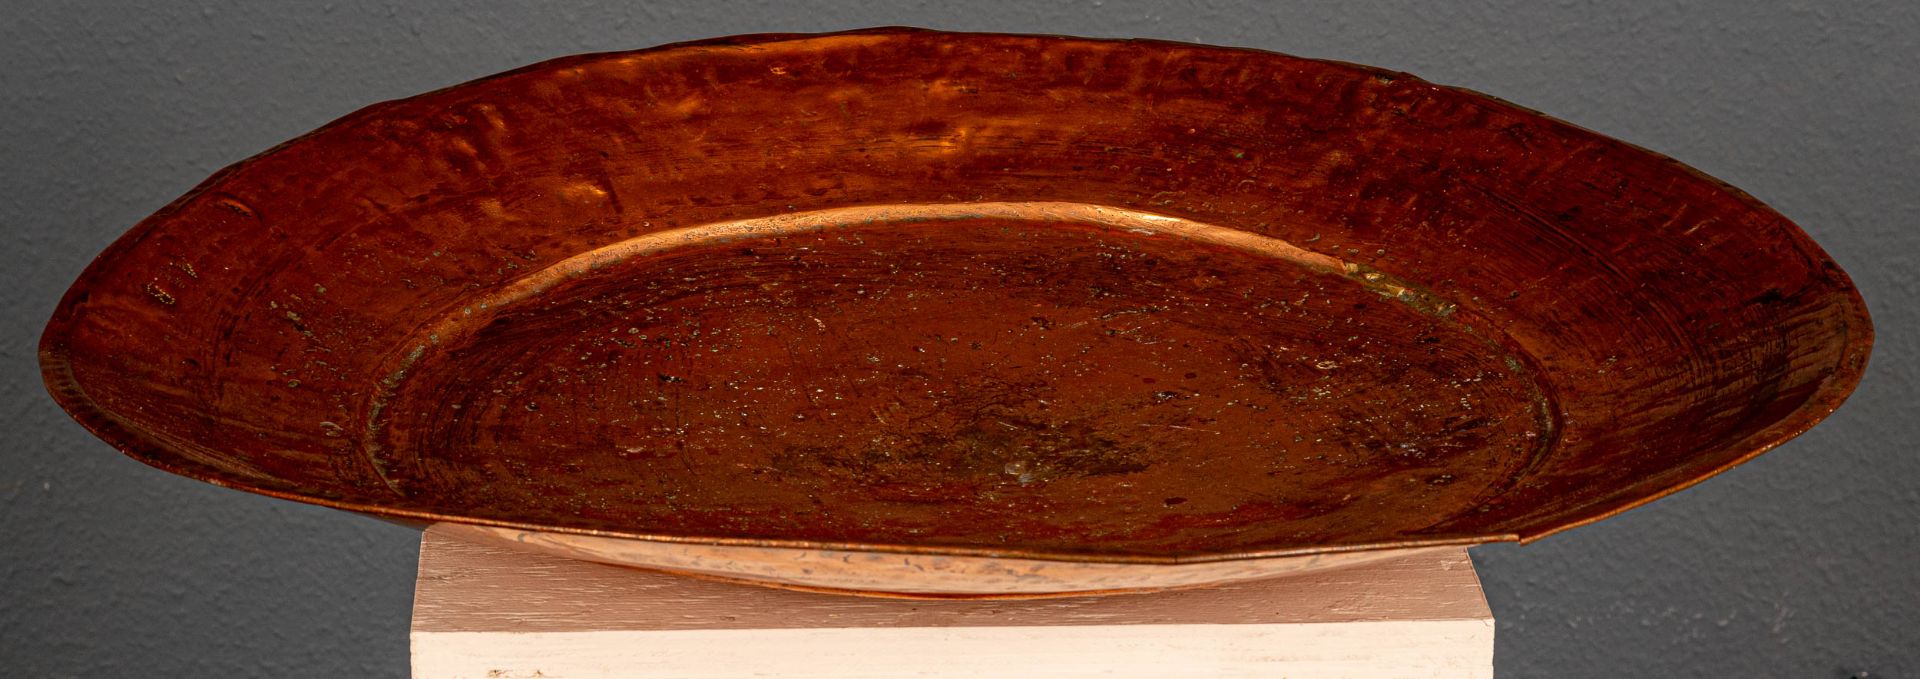 Sehr große Kupferplatte, bez.:"A 1 B", arabischer Raum, 20. Jhdt., Durchmesser ca. 71 cm. - Image 6 of 7